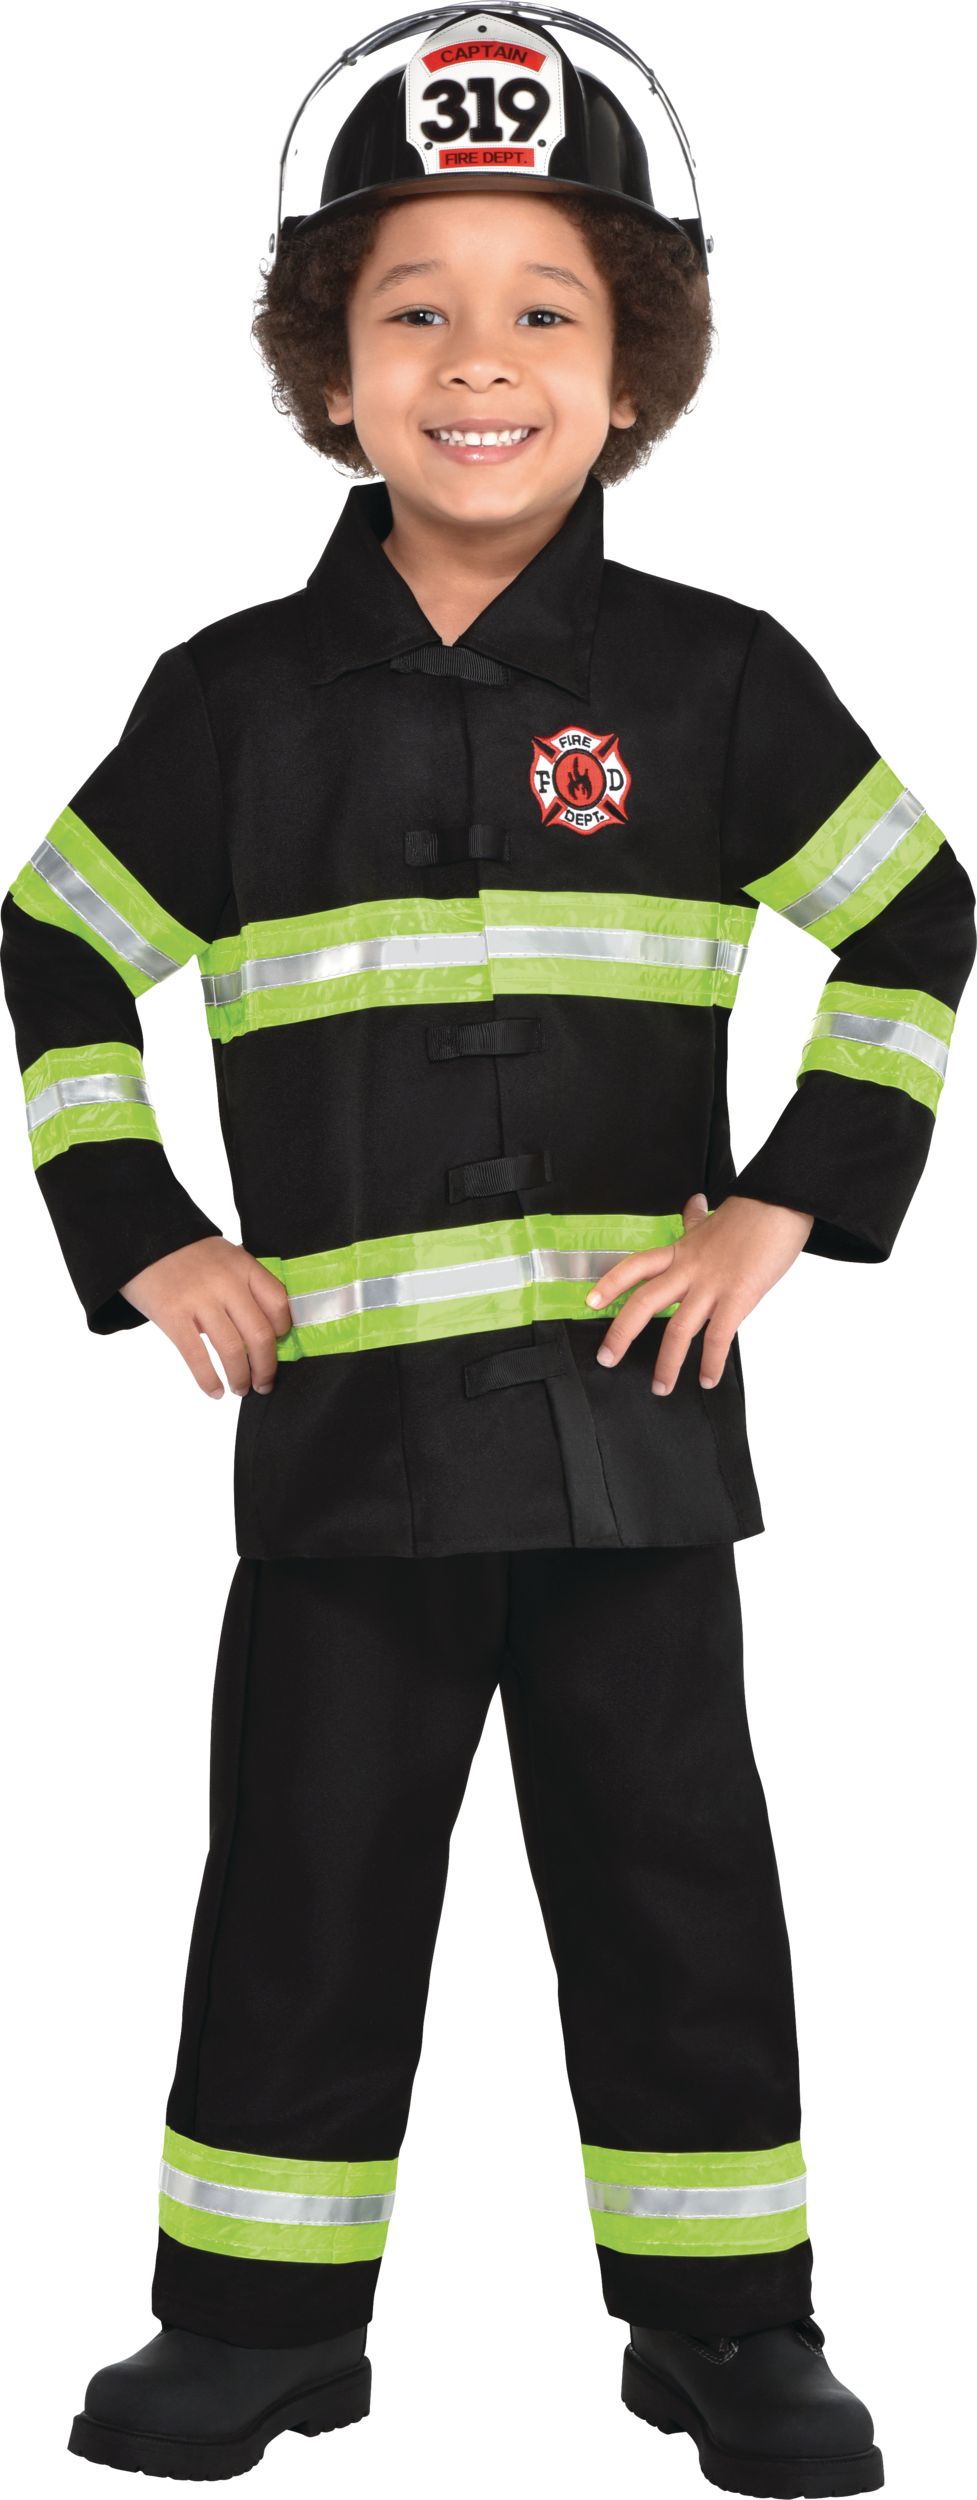 FIESTAS GUIRCA, SL - Déguisement petit pompier bébé - 92/98 (1-2 ans) -  Déguisements